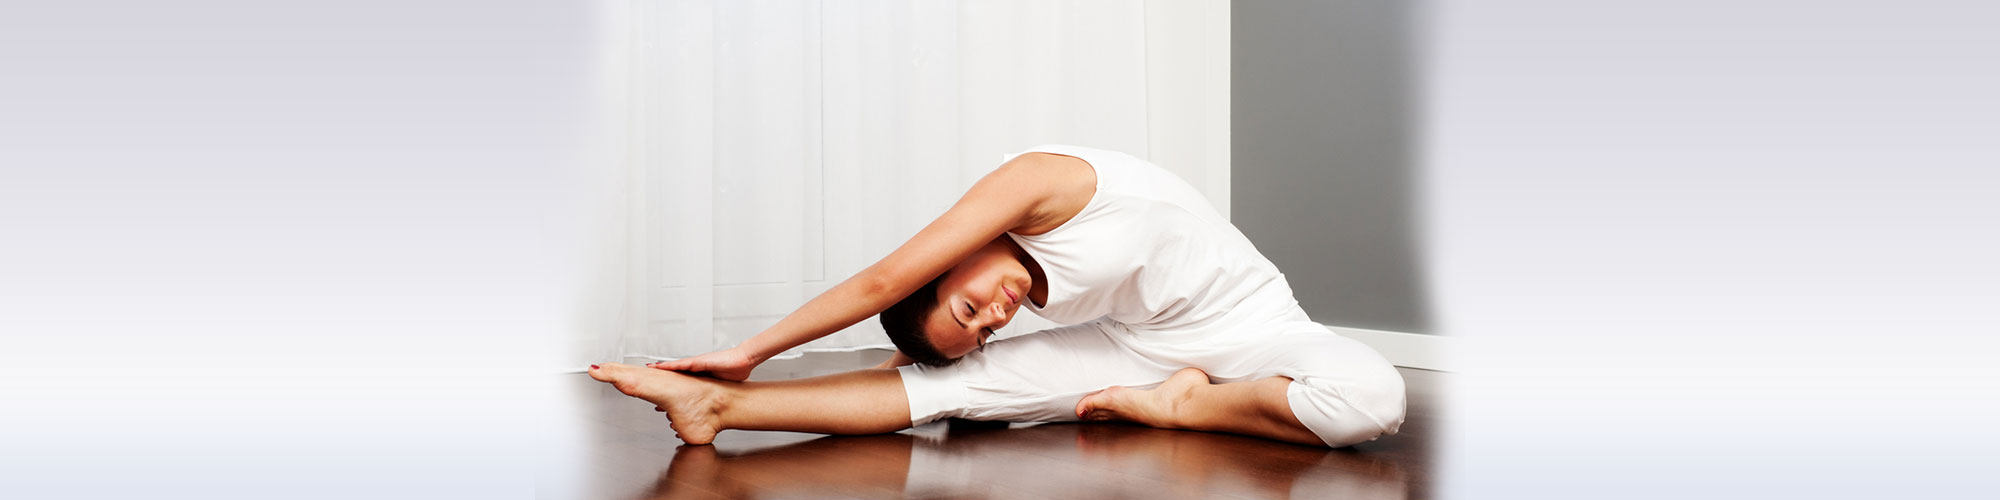 Yoga Stretch